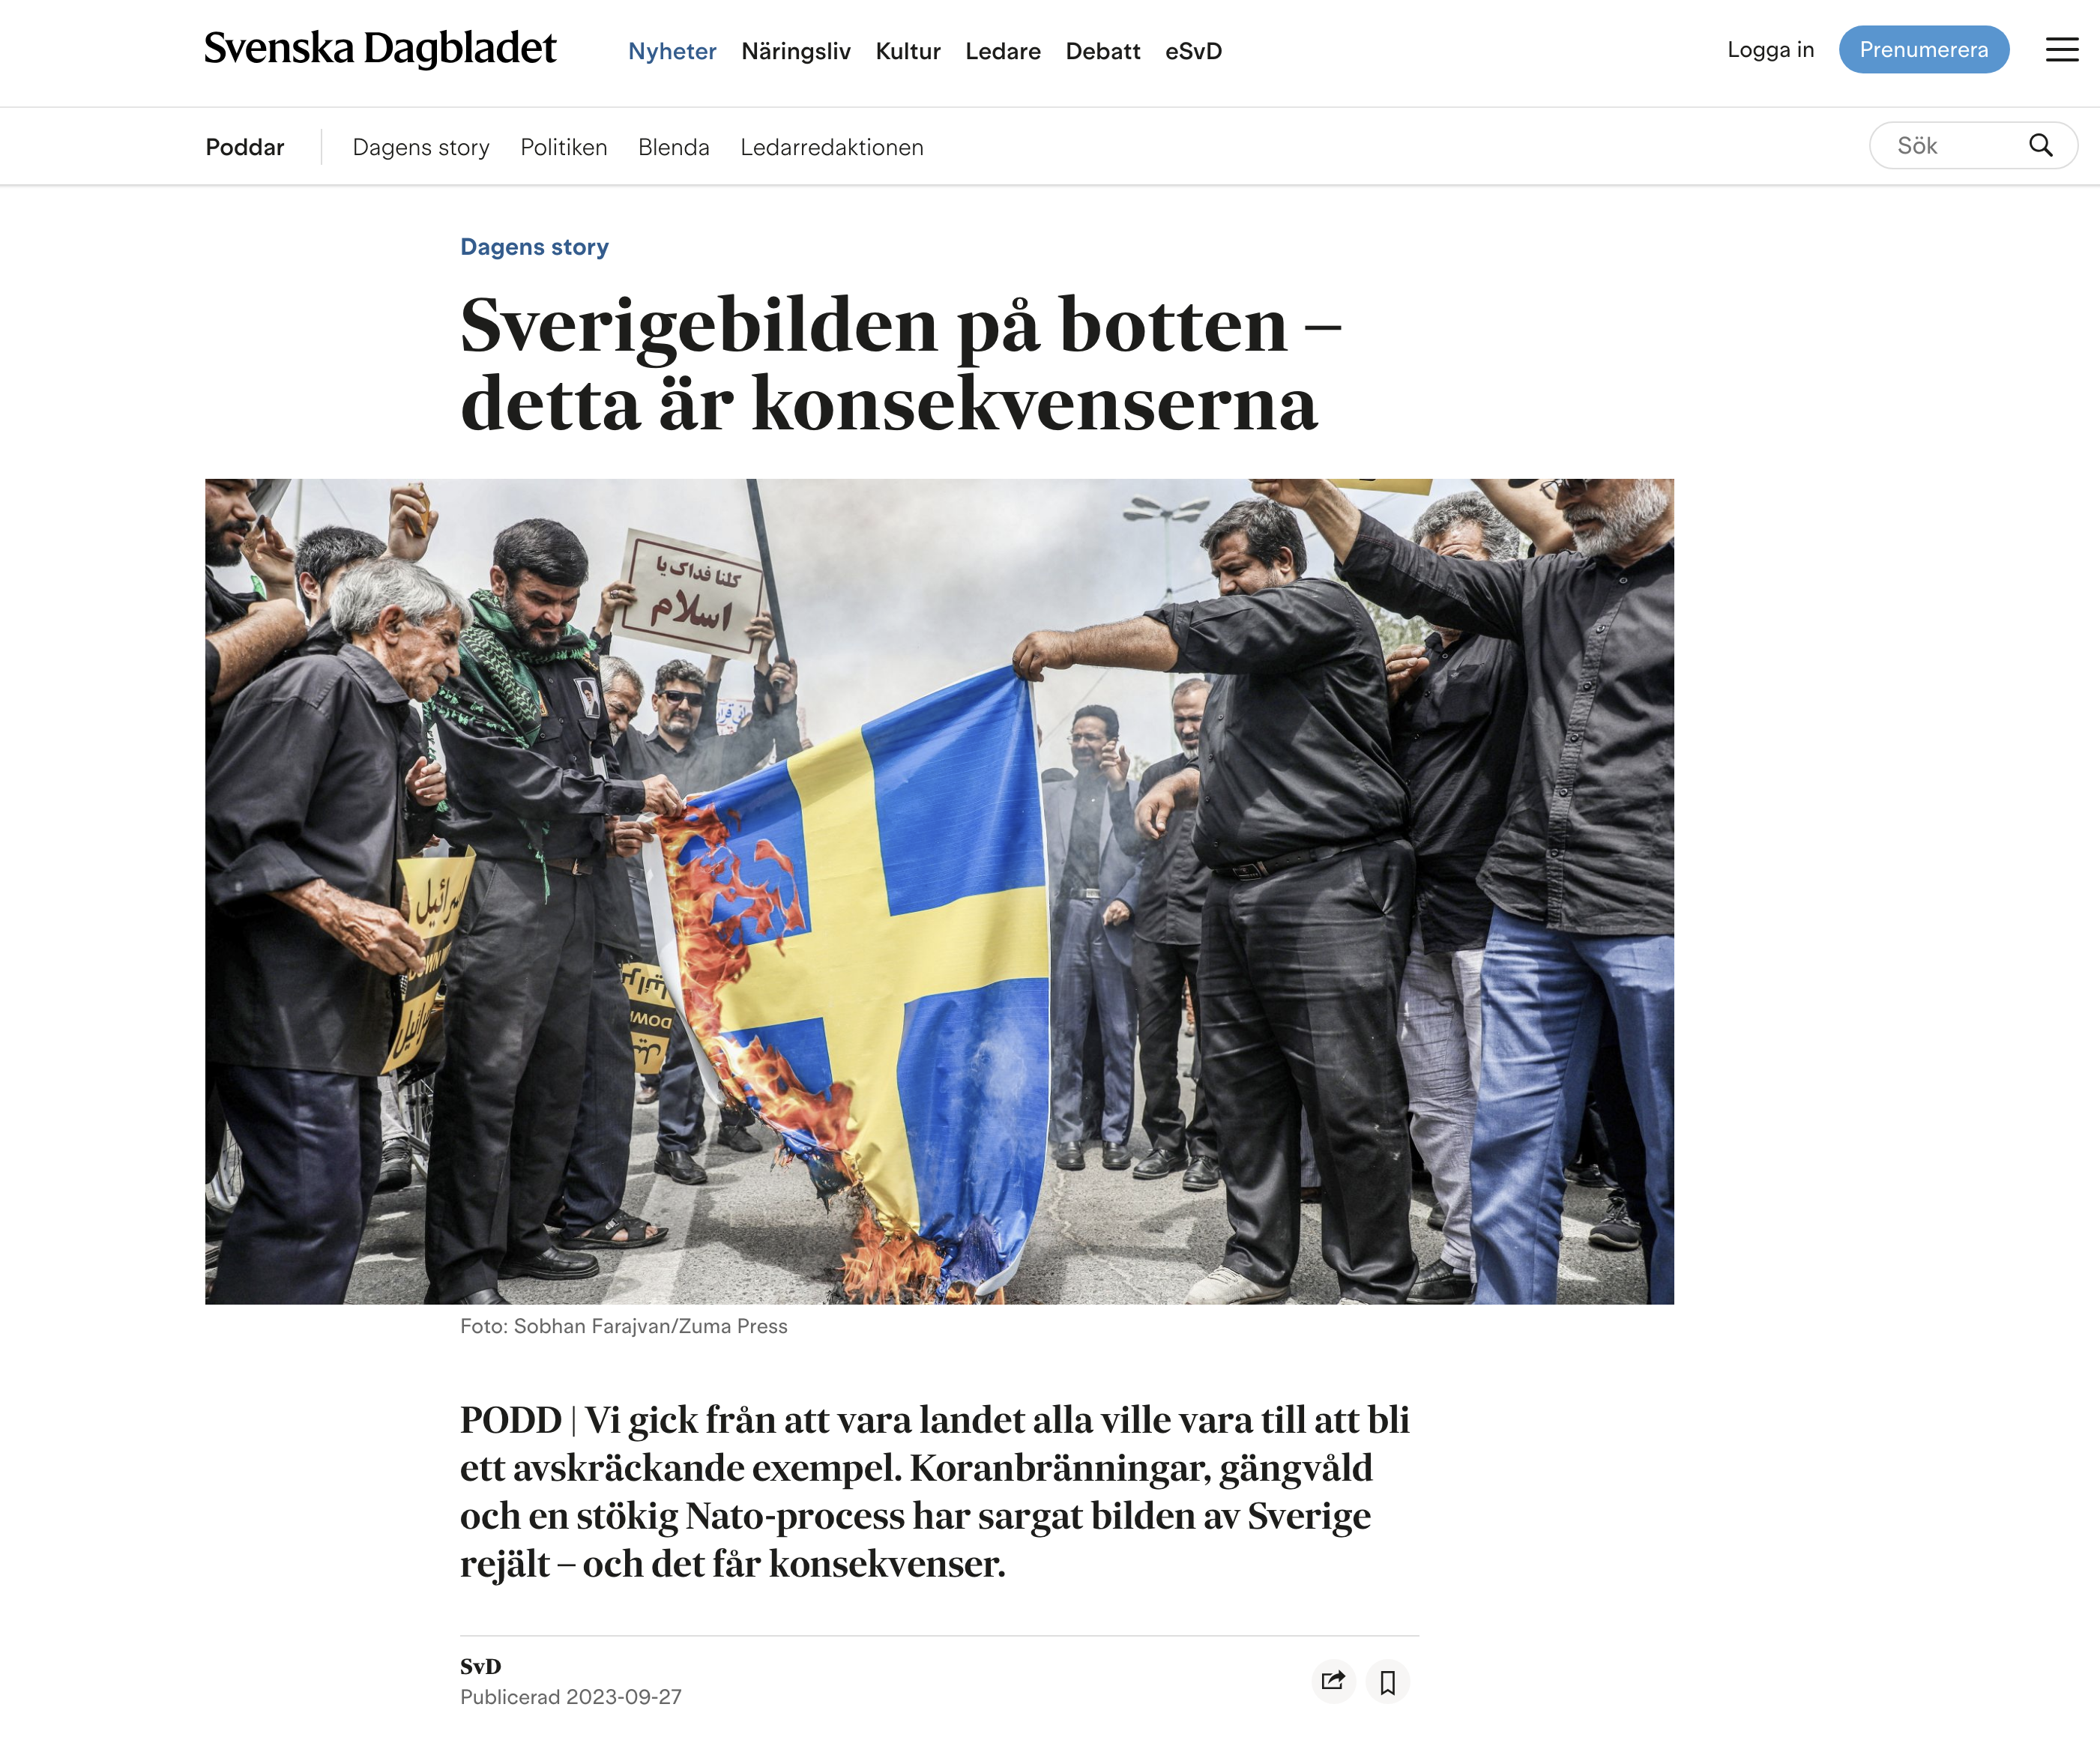 Published - Svenska Dagbladet